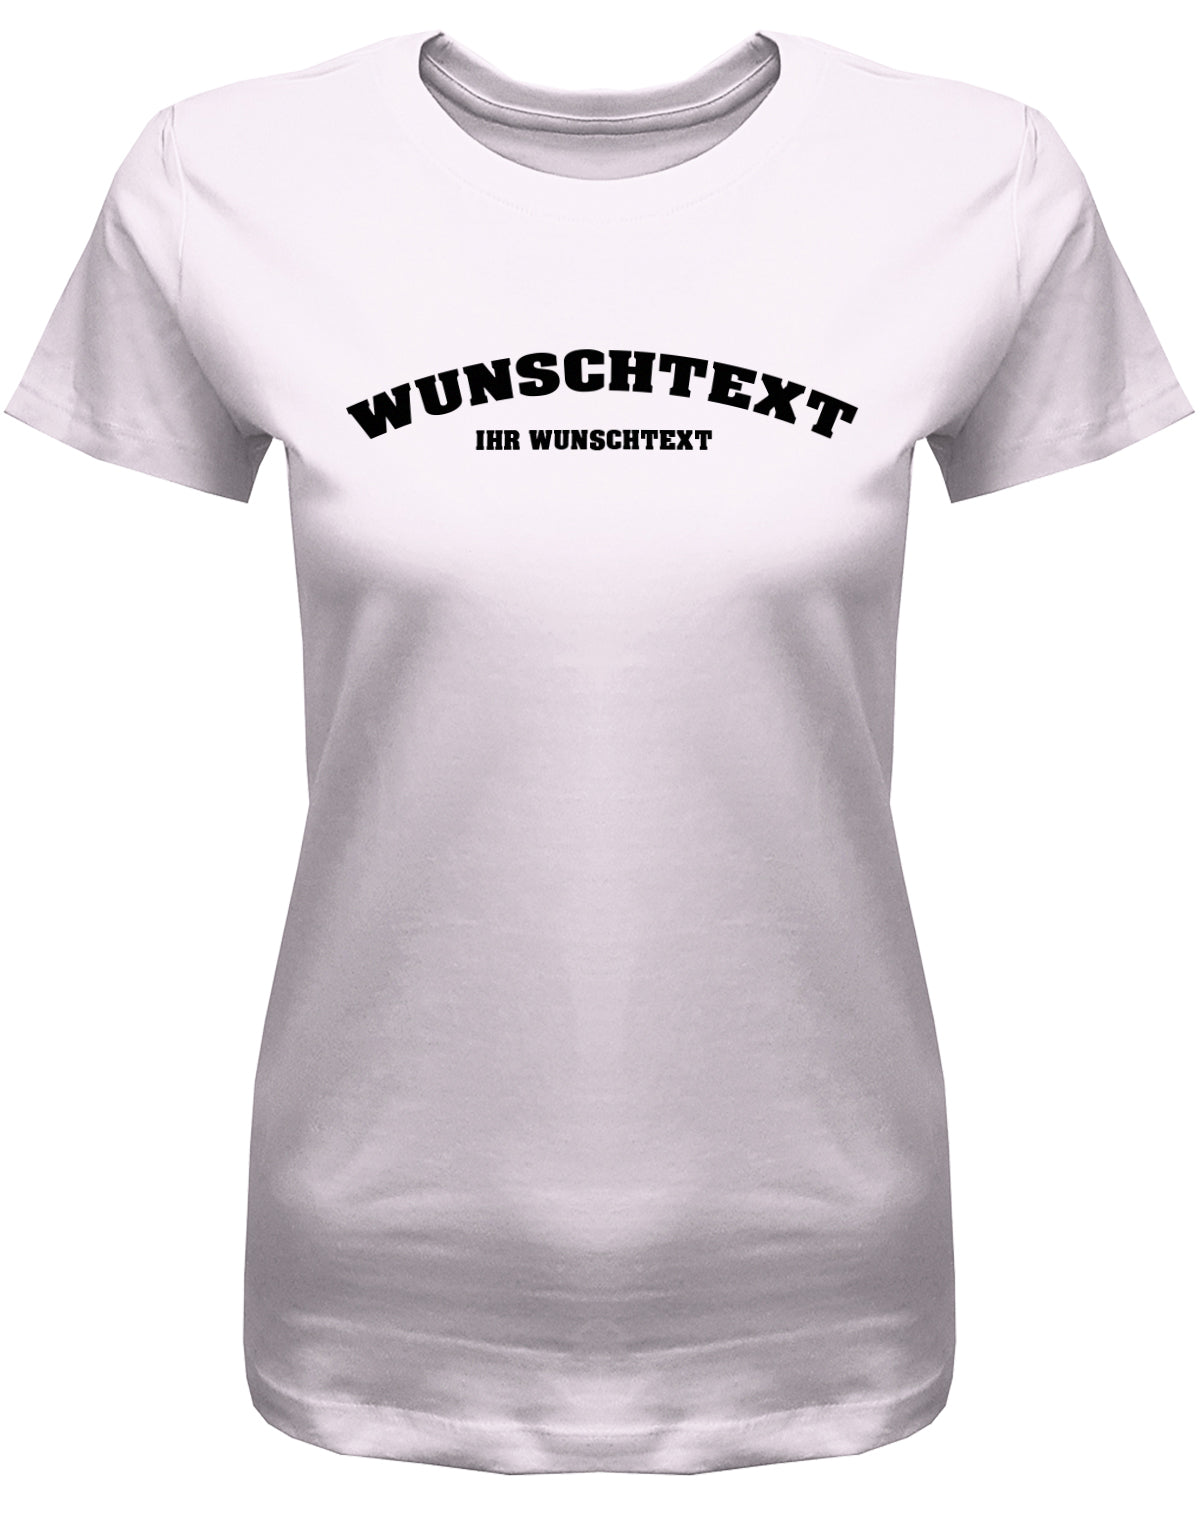 Frauen Tshirt mit Wunschtext.  Abgerundeter Text im Collage-Style. Rosa